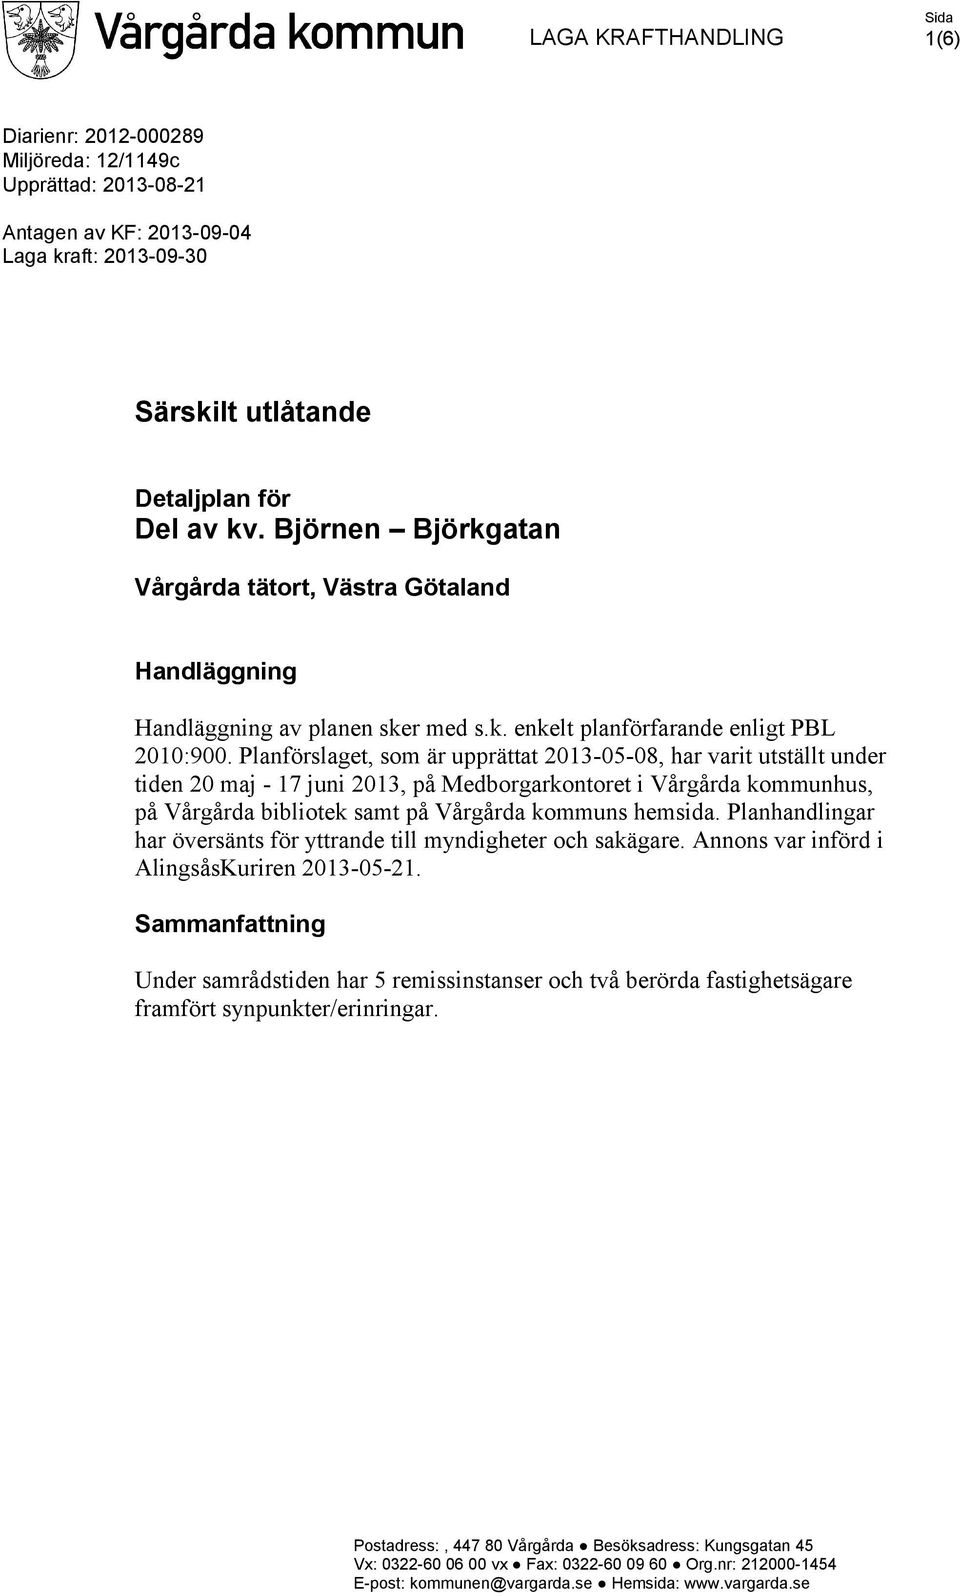 Planförslaget, som är upprättat 2013-05-08, har varit utställt under tiden 20 maj - 17 juni 2013, på Medborgarkontoret i Vårgårda kommunhus, på Vårgårda bibliotek samt på Vårgårda